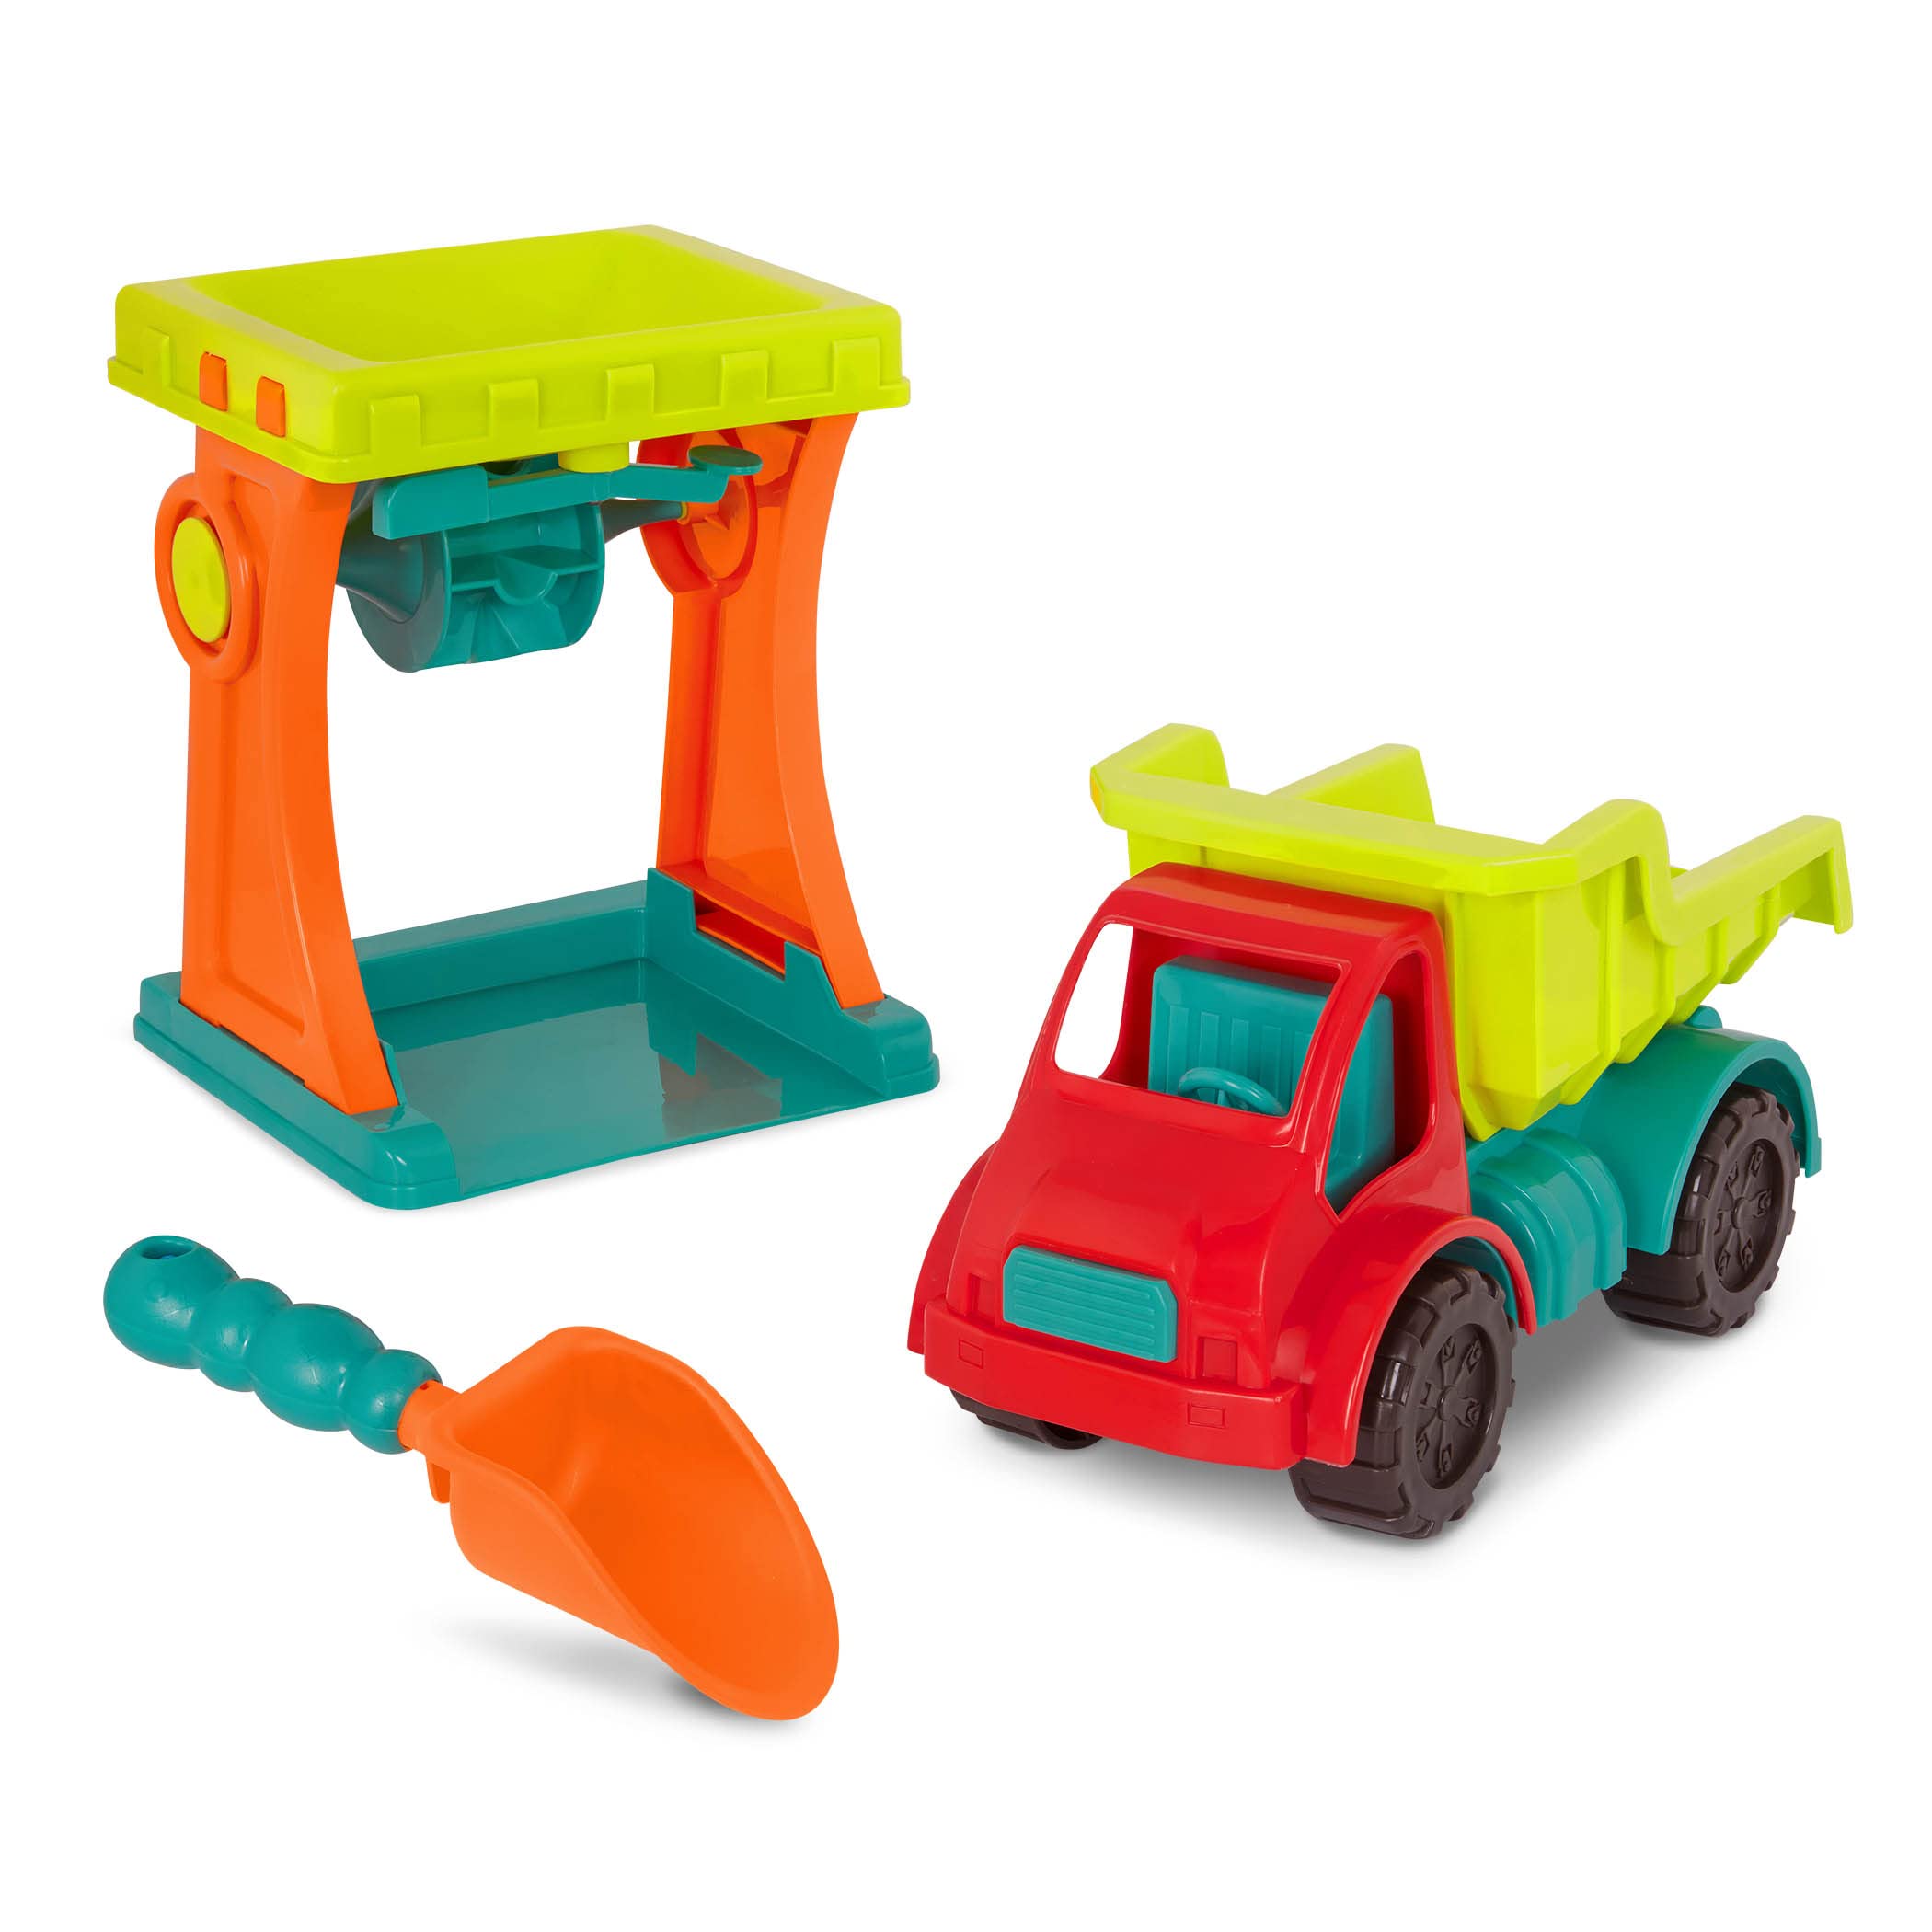 B. toys Sandspielzeug Set Sandmühle, Kipplaster, Schaufel – Sandkasten Spielzeug Kinder, Strandspielzeug Fahrzeug für Mädchen und Jungen ab 18 Monaten (3 Teile)